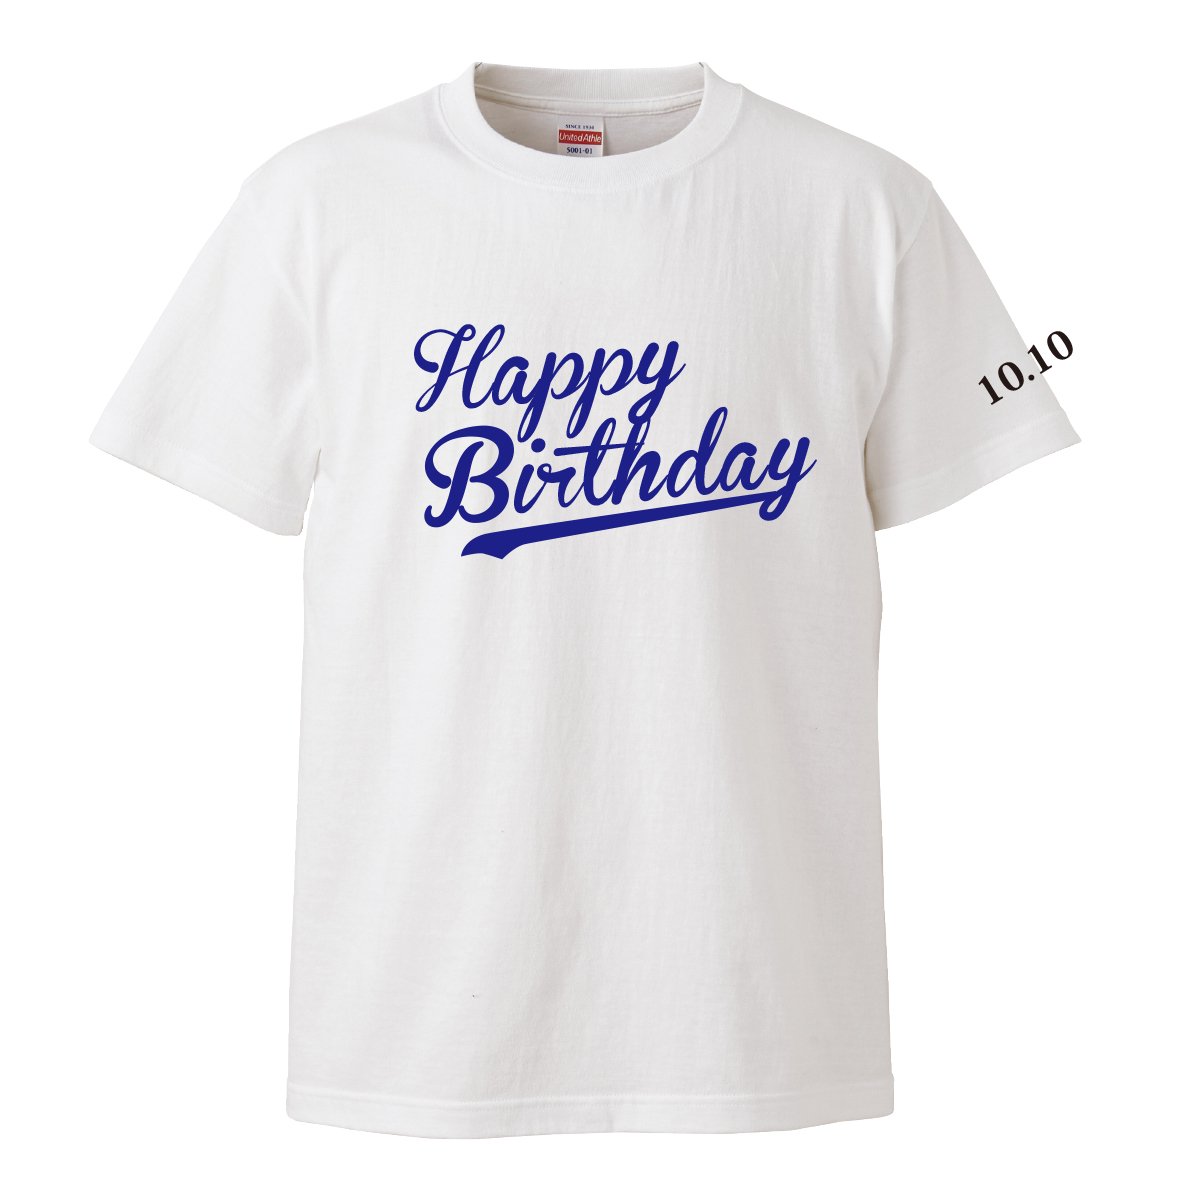 【名入れ込み】 「Happy Birthday」 誕生日名入れTシャツ〜生まれた月日を袖にプリント -  還暦や出産祝いの名入れTシャツ公式通販│名入れTシャツ.com